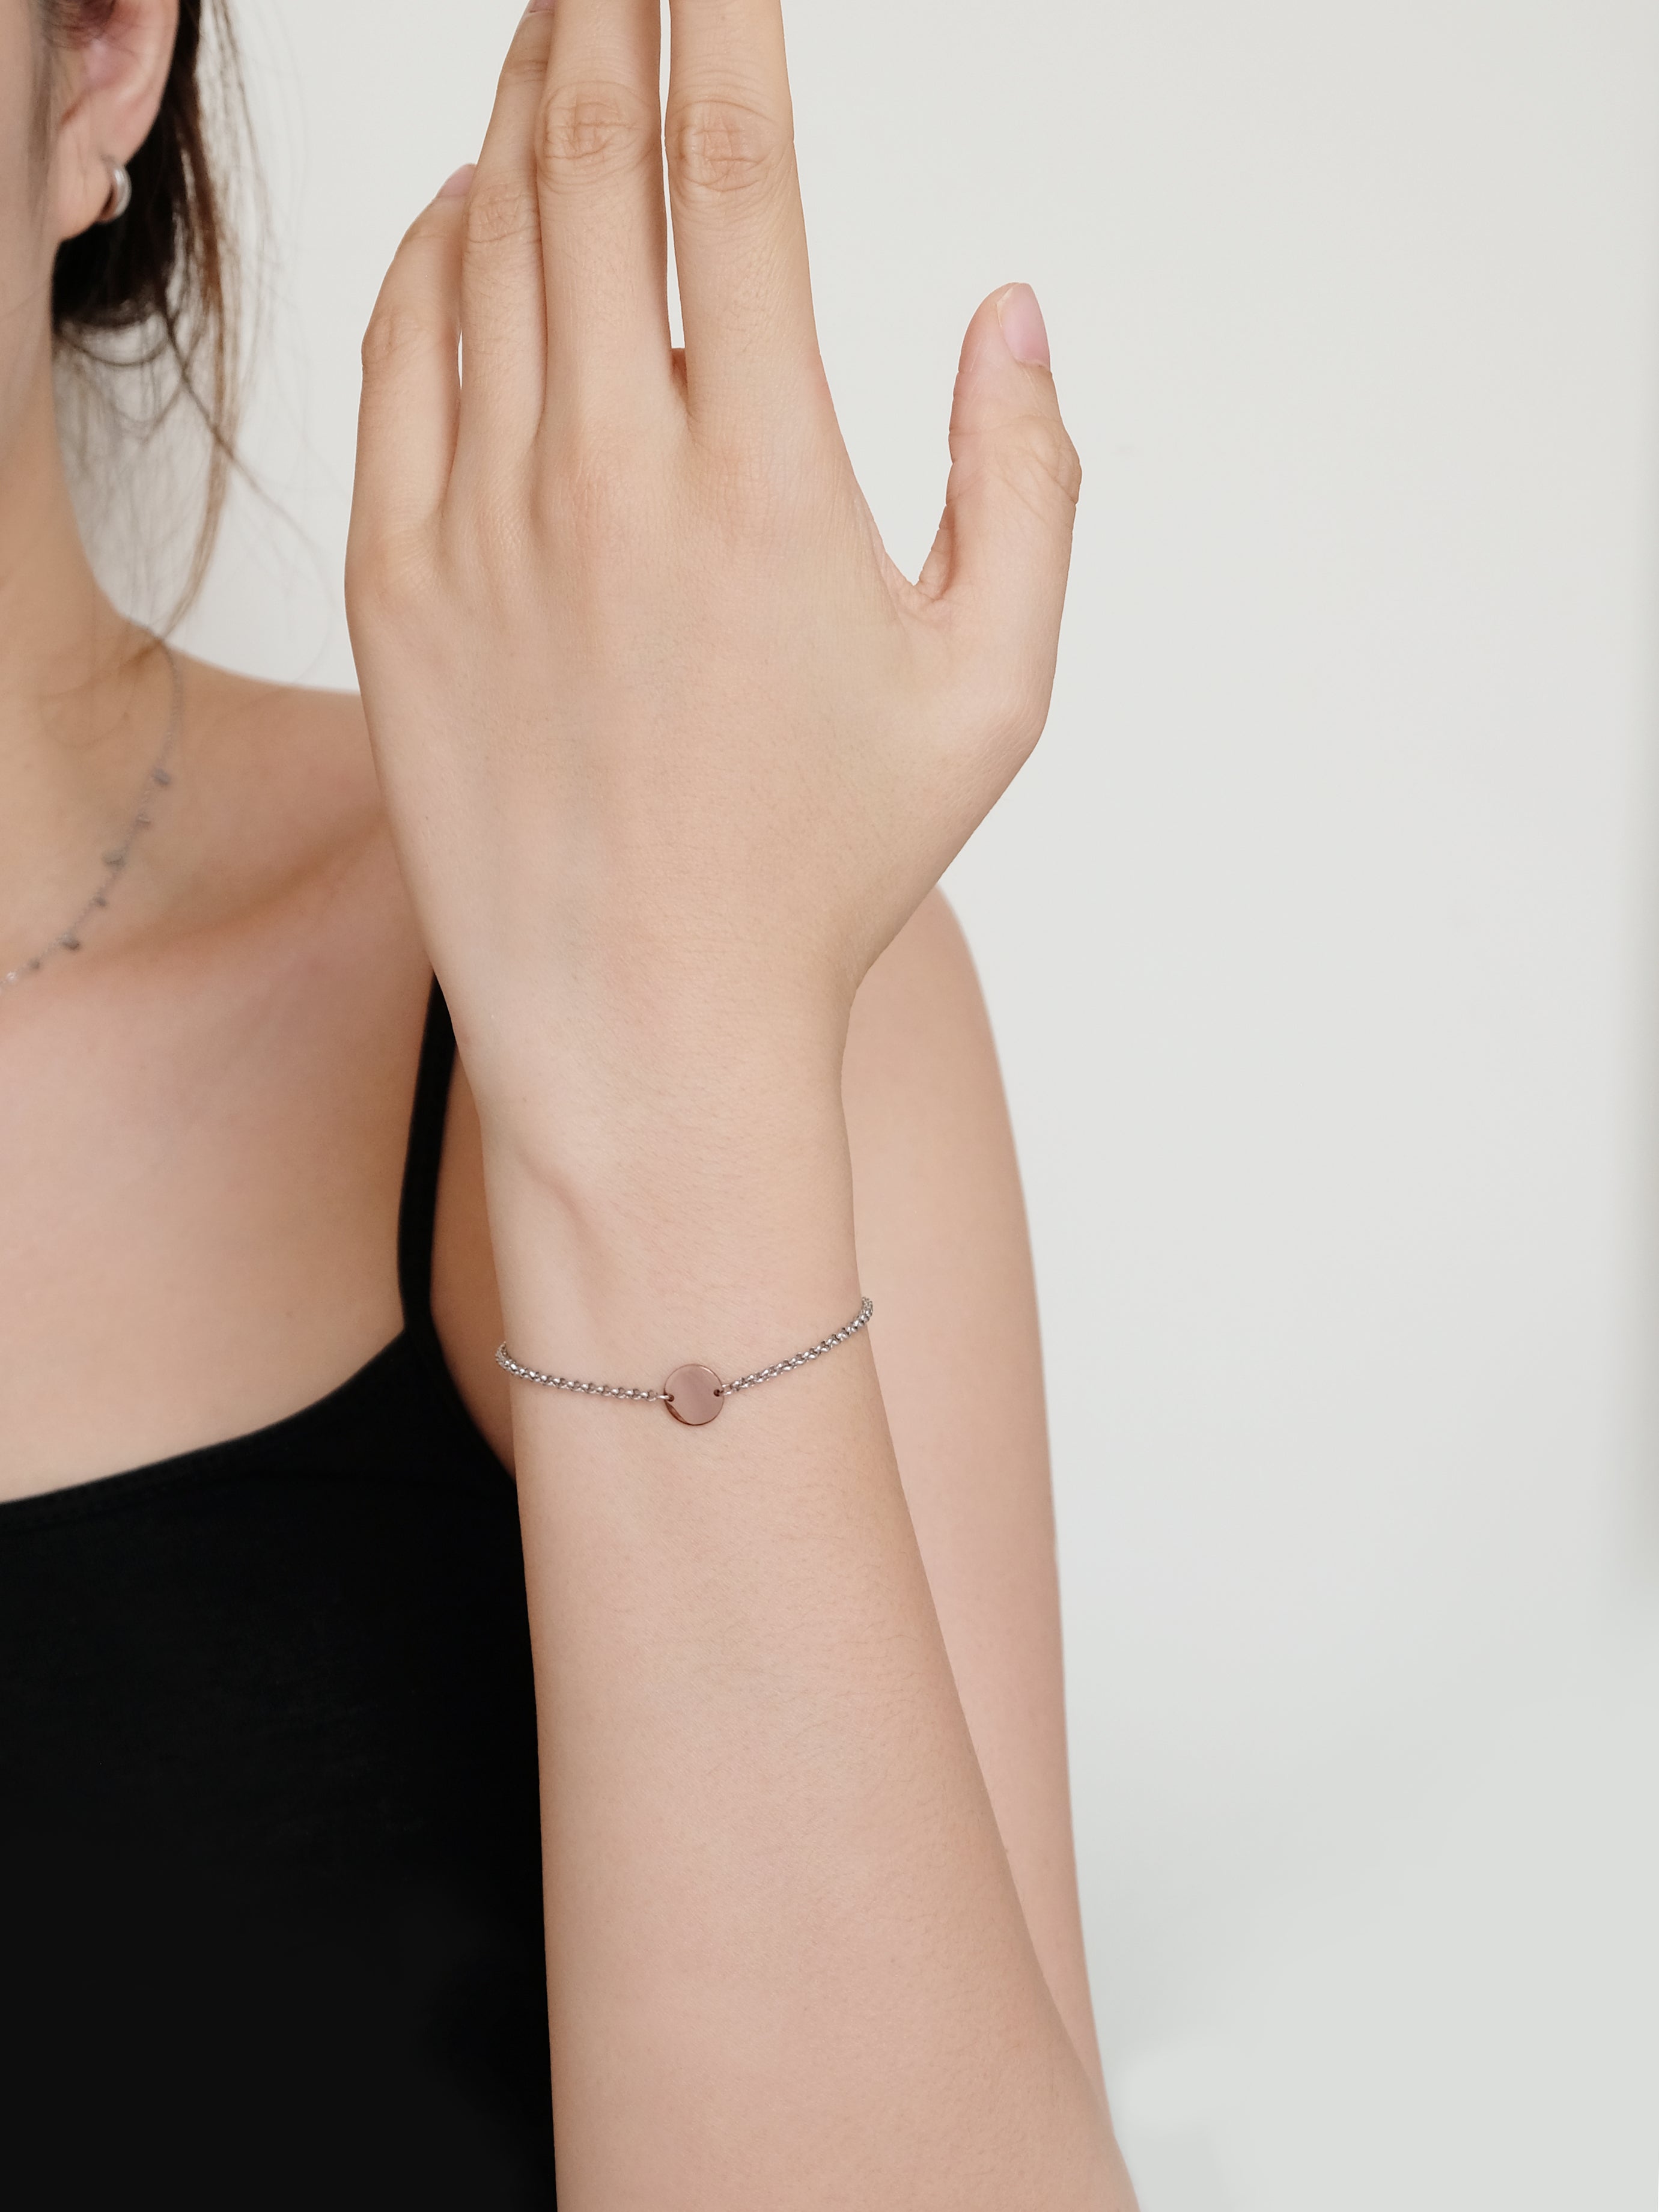 Anahita Hand Bracelet by calliajewelry - Other body jewelry - Afrikrea